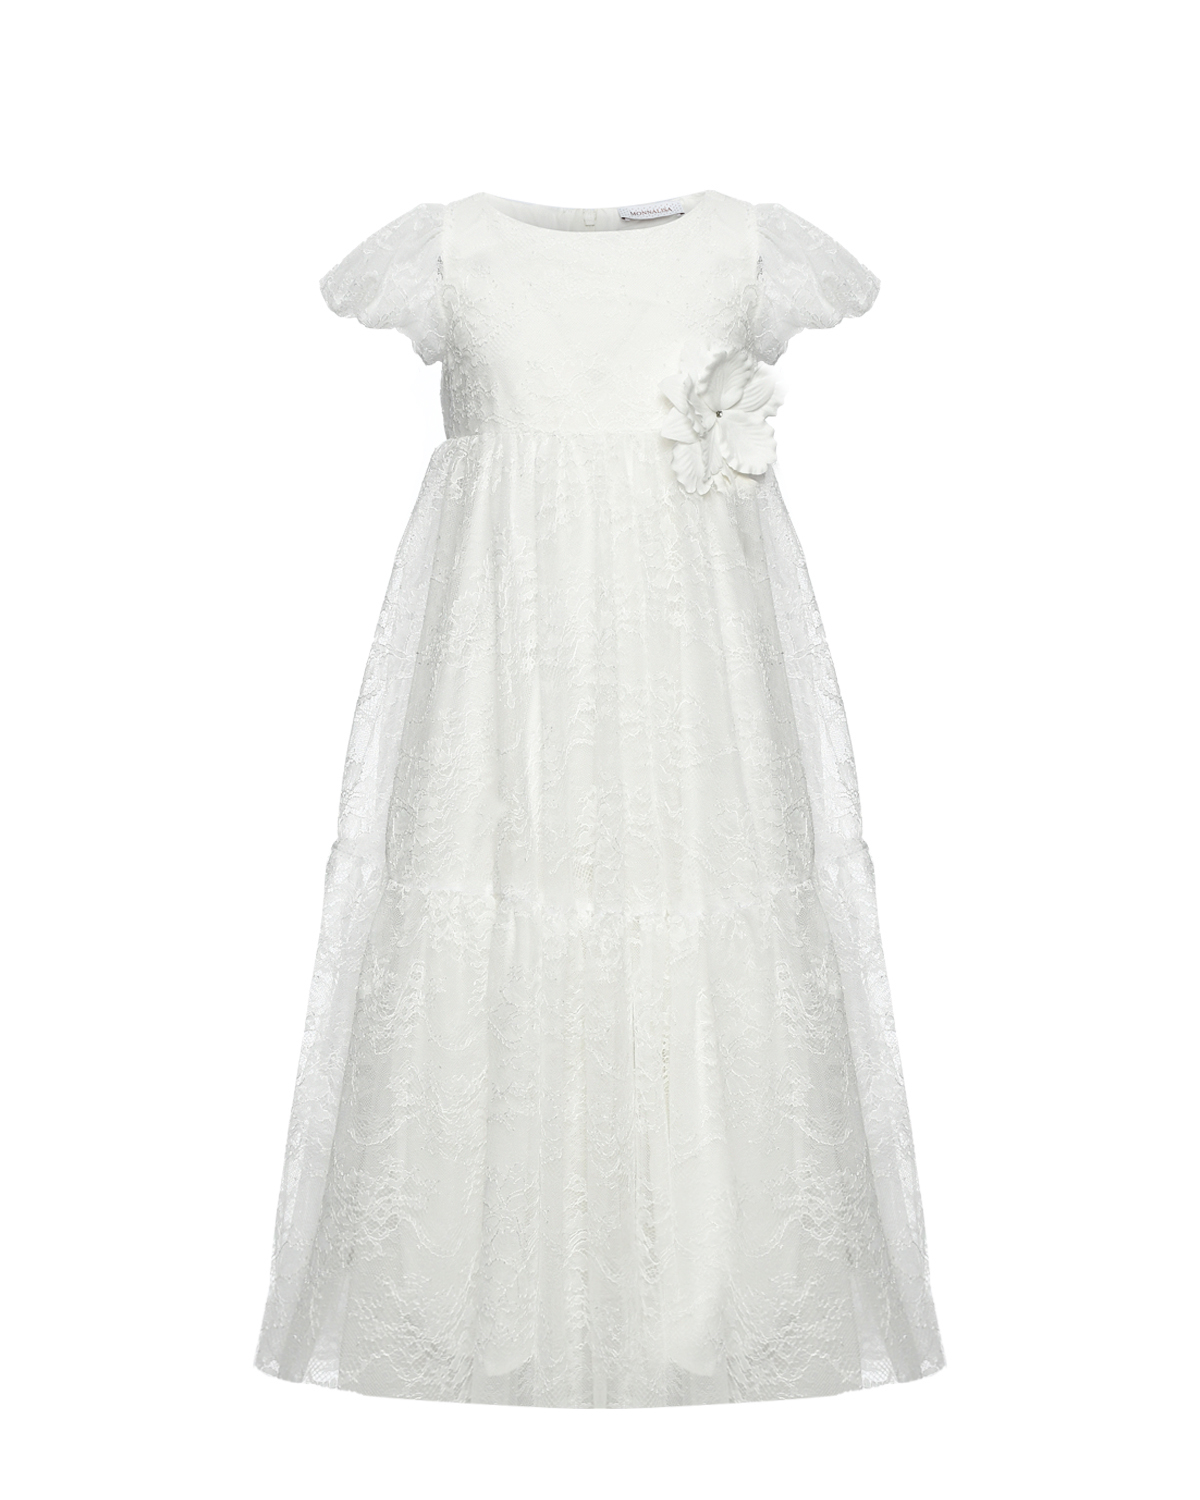 Платье из кружевной ткани Monnalisa, размер 116, цвет белый - фото 1